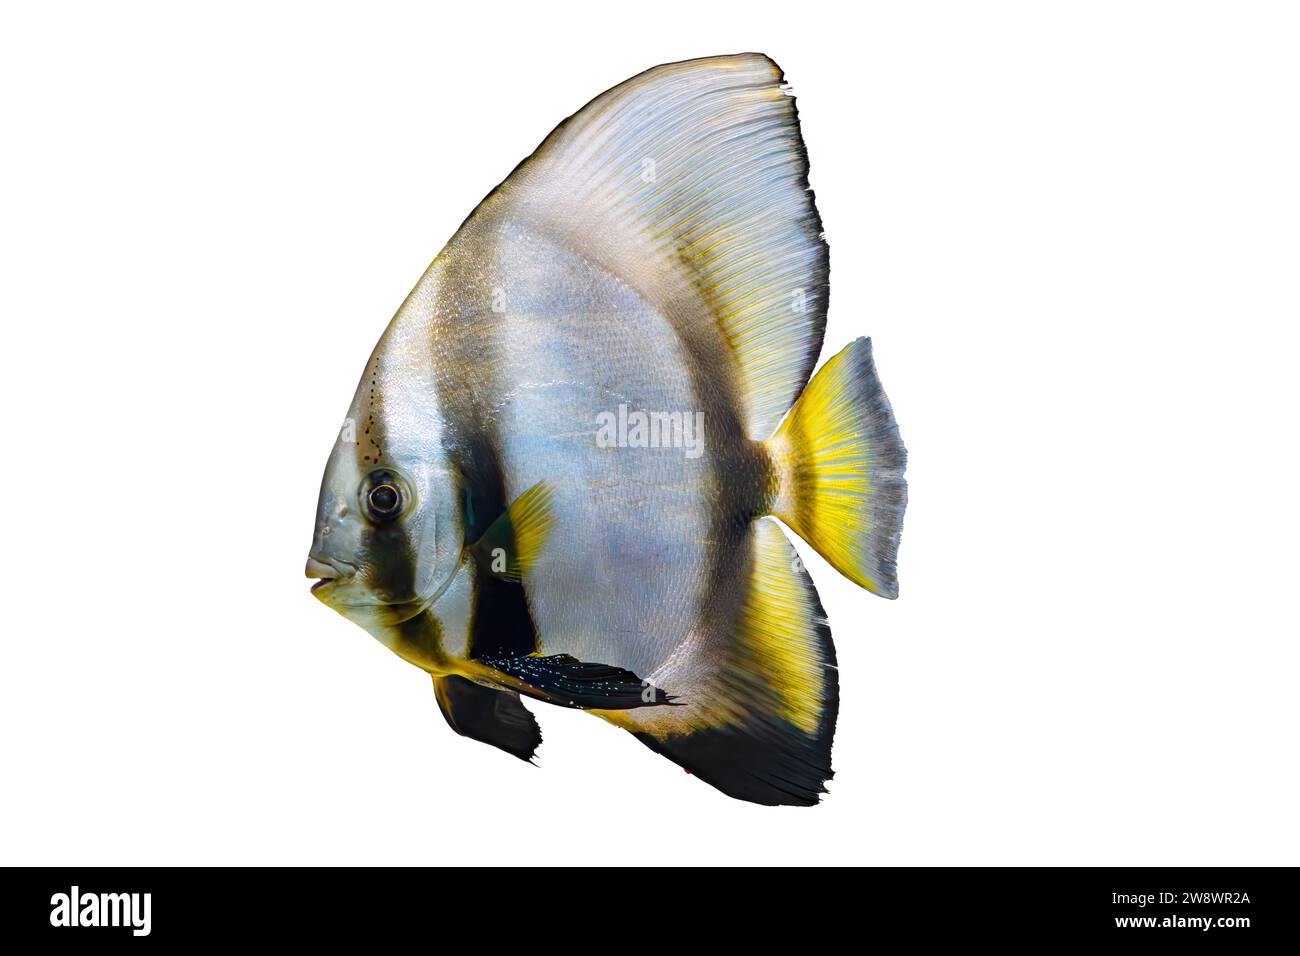 Schöner heller Fisch Platax teira, Langflossenfledermausfisch isoliert auf weißem Hintergrund. Tropische Aquarienfische, Haustier, Wasserorganismen, Unterwassertiere Stockfoto